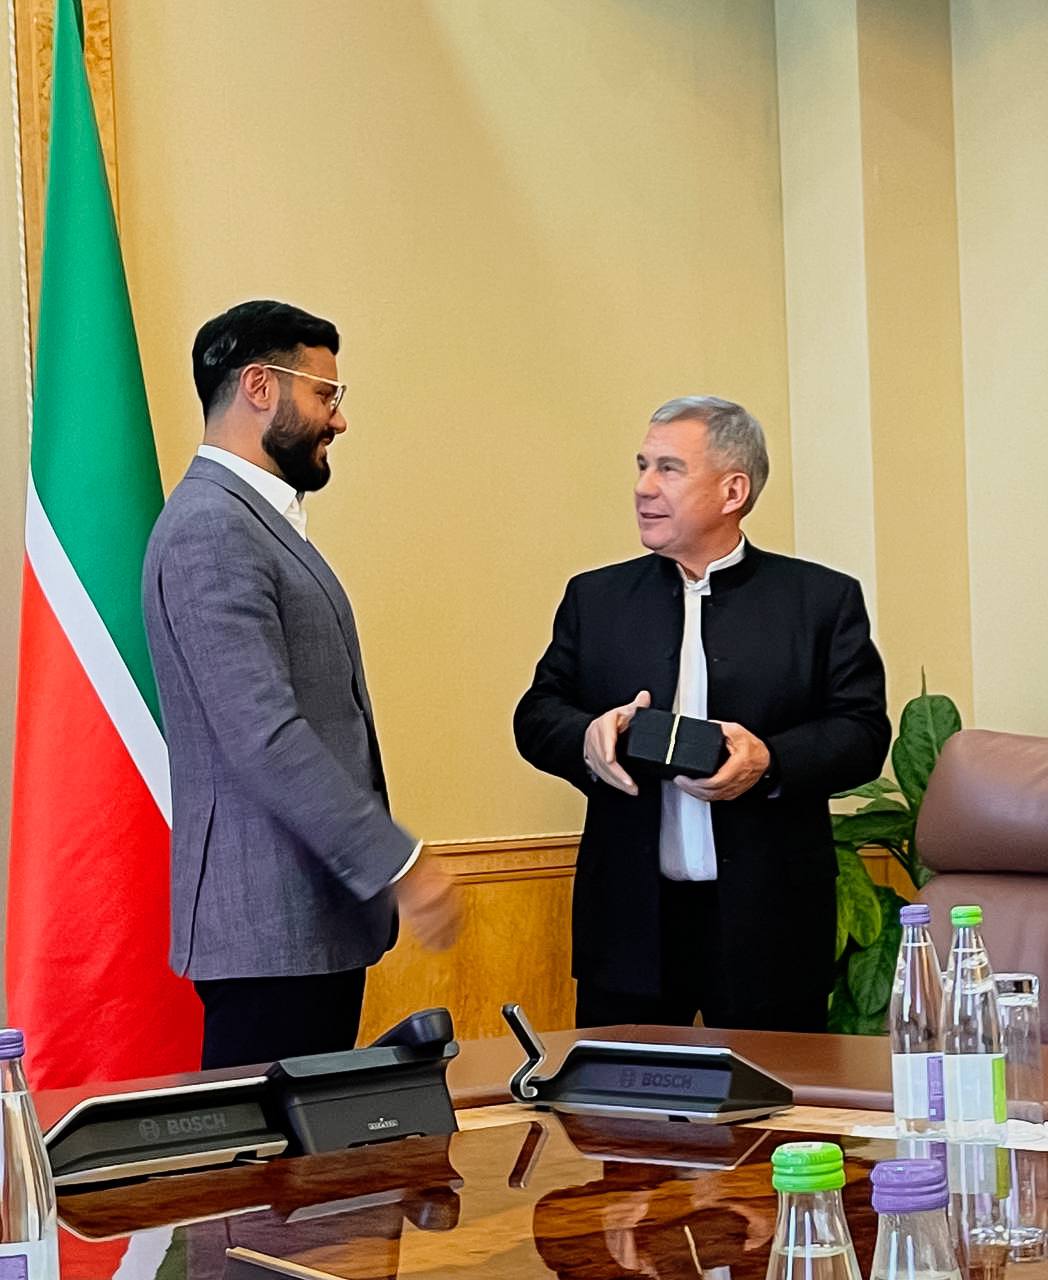 Встреча президента компании с президентом республики Татарстан.